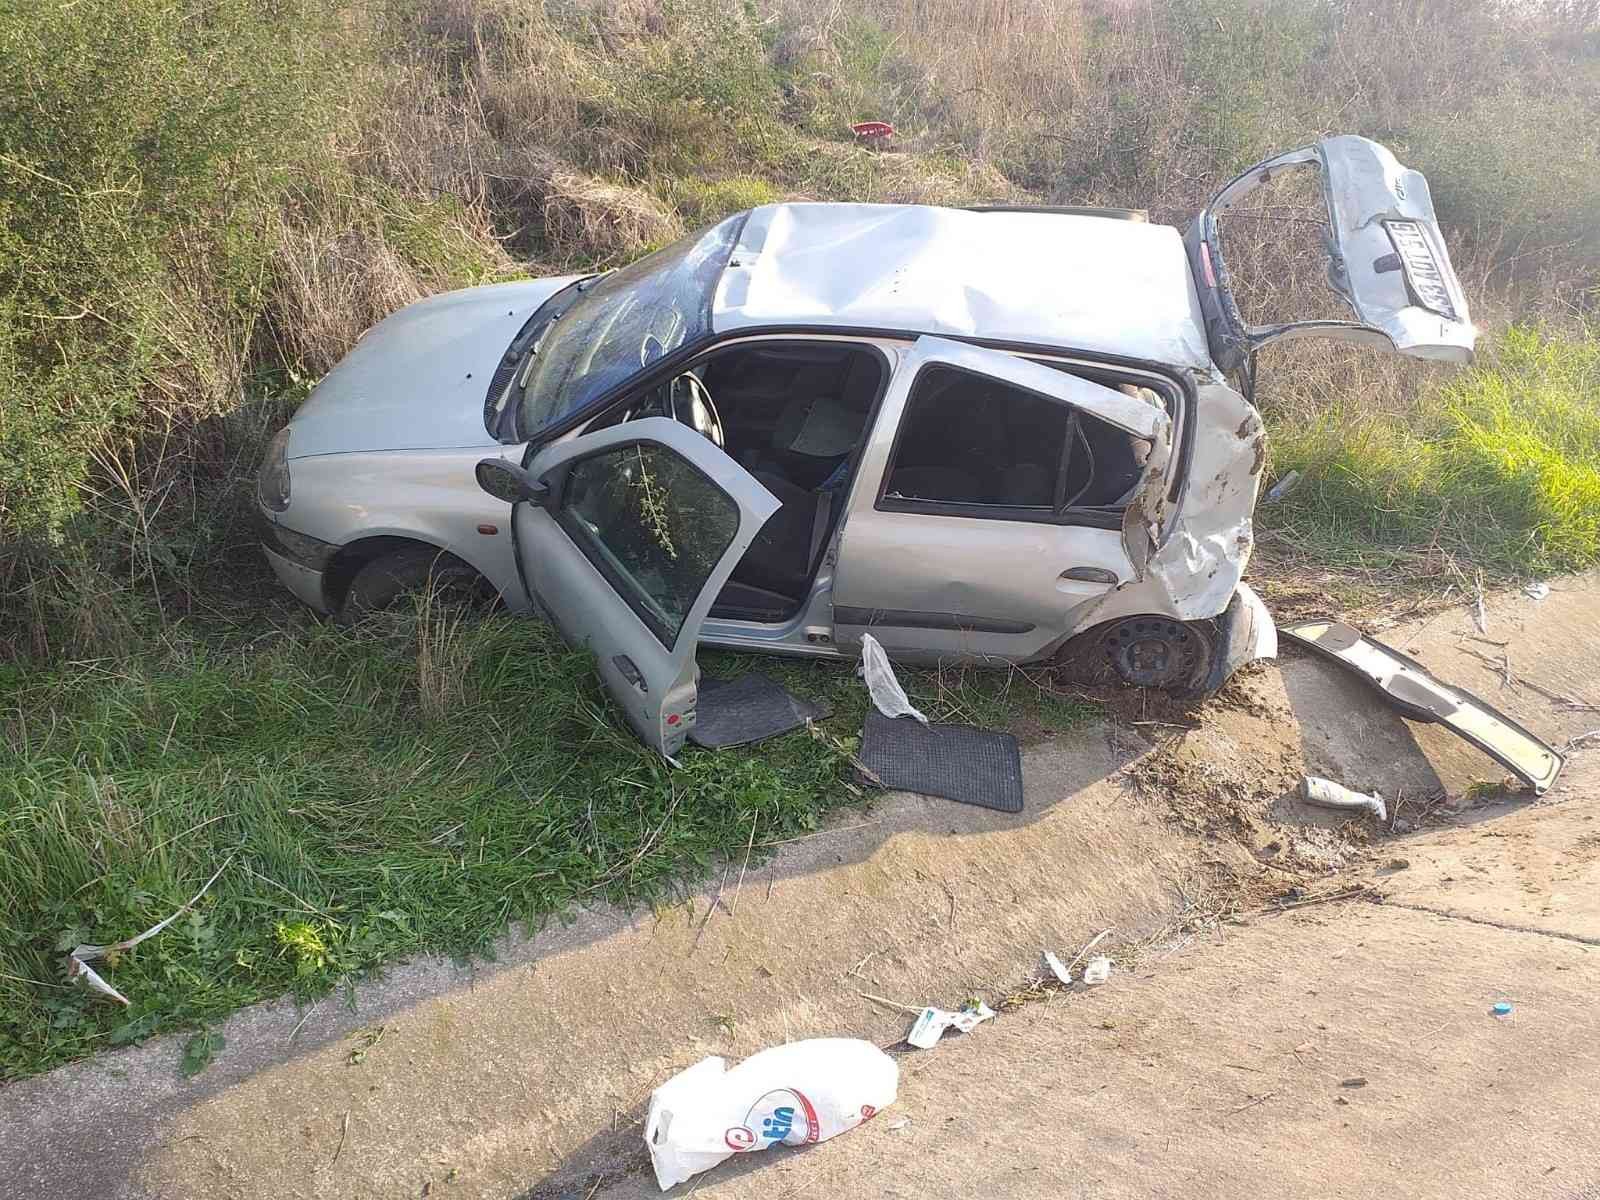 Denizli’de son bir haftada 122 trafik kazası meydana geldi #denizli